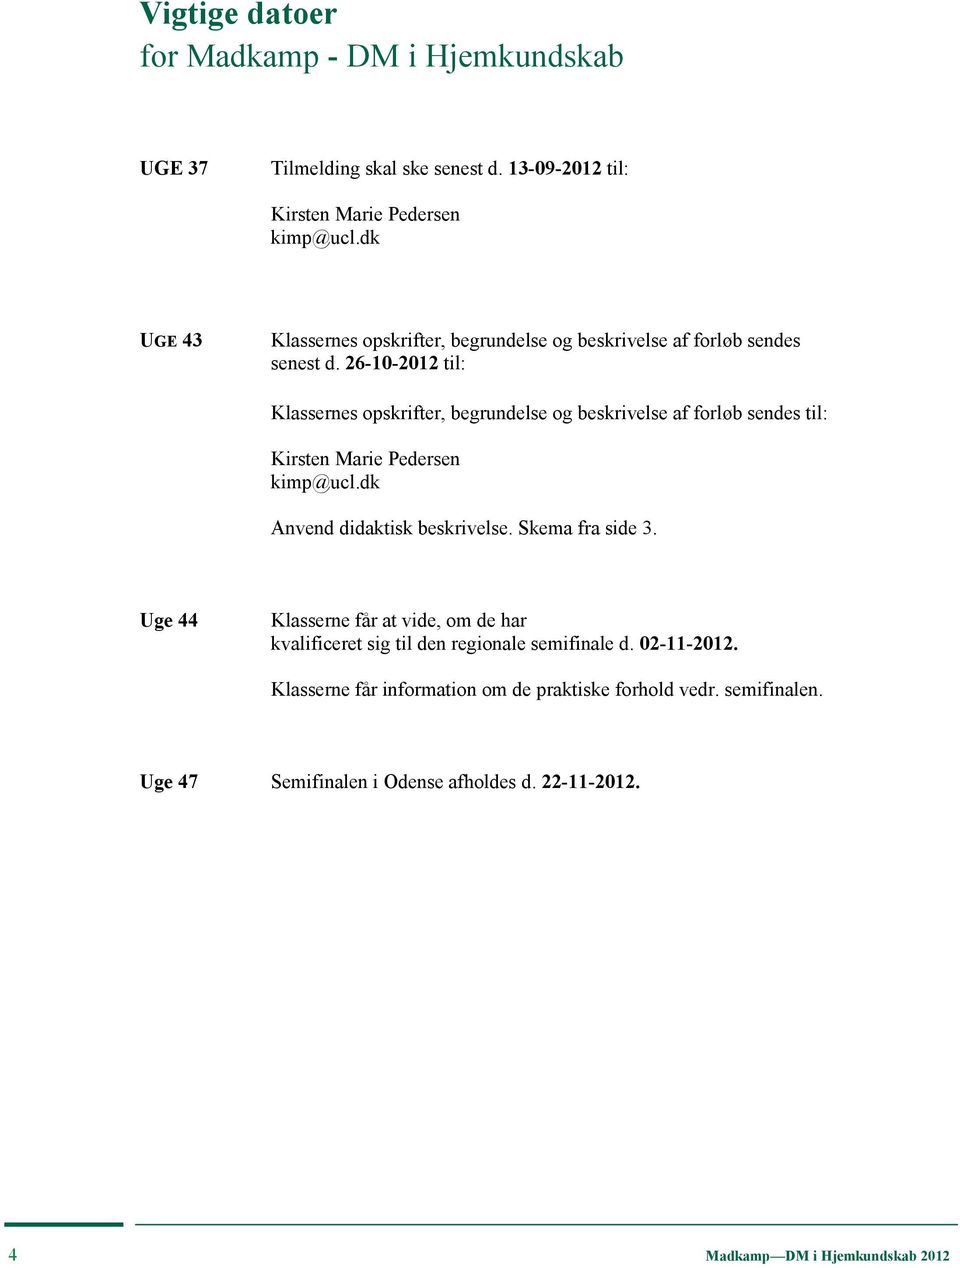 26-10-2012 til: Klassernes opskrifter, begrundelse og beskrivelse af forløb sendes til: Kirsten Marie Pedersen kimp@ucl.dk Anvend didaktisk beskrivelse.